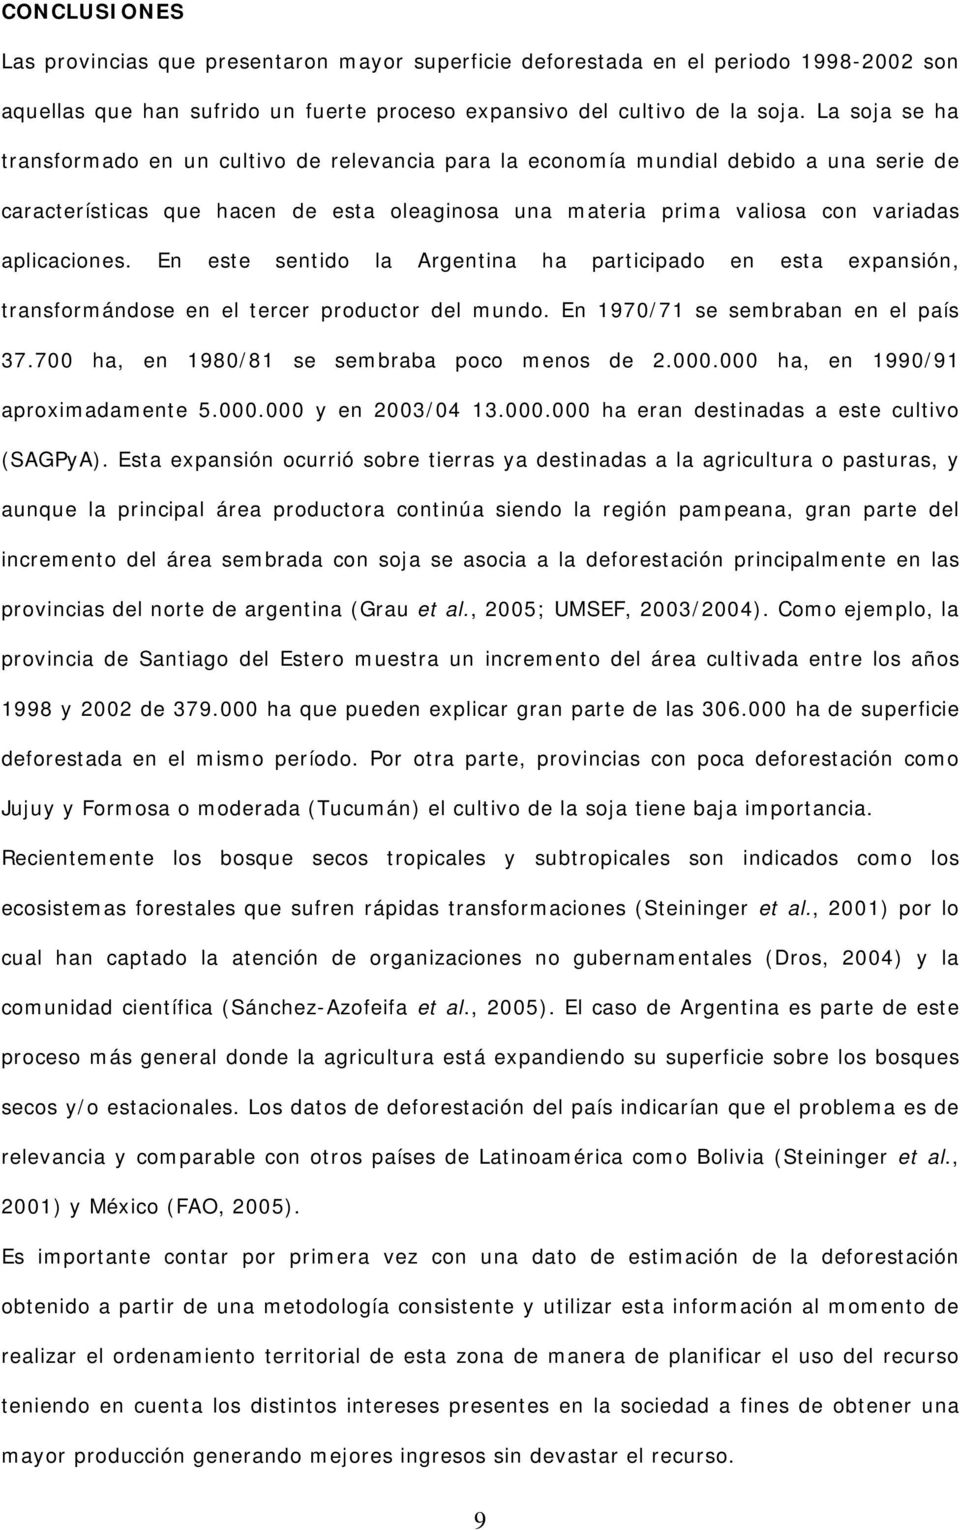 En este sentido la Argentina ha participado en esta expansión, transformándose en el tercer productor del mundo. En 1970/71 se sembraban en el país 37.700 ha, en 1980/81 se sembraba poco menos de 2.